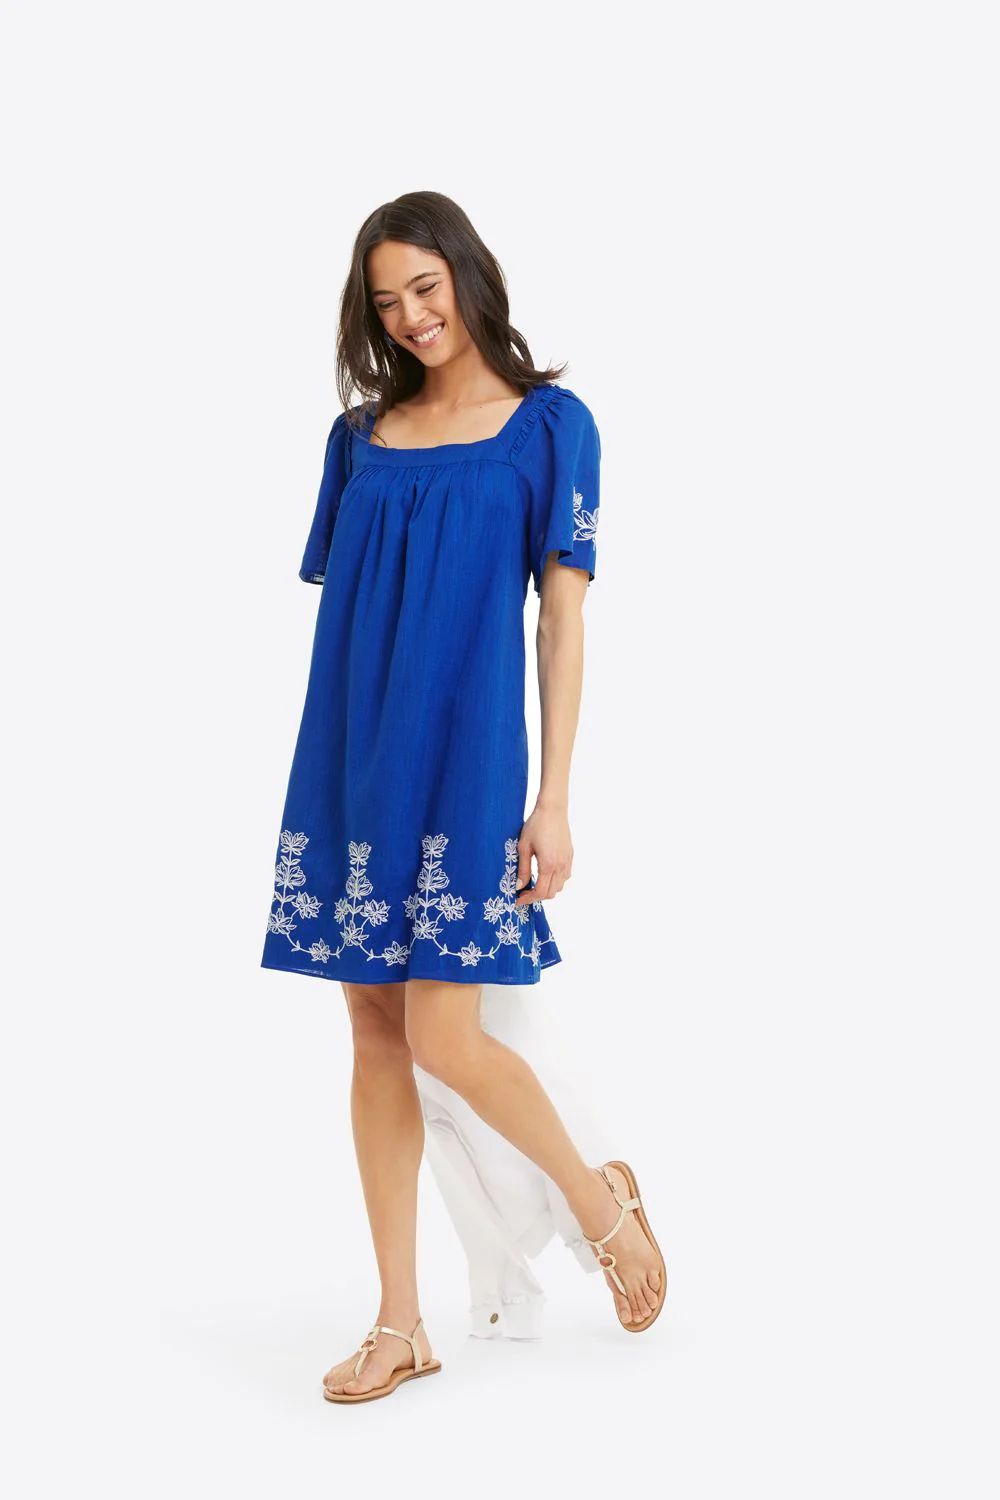 Maren Shift Dress in Blue Embroidered Floral | Draper James (US)